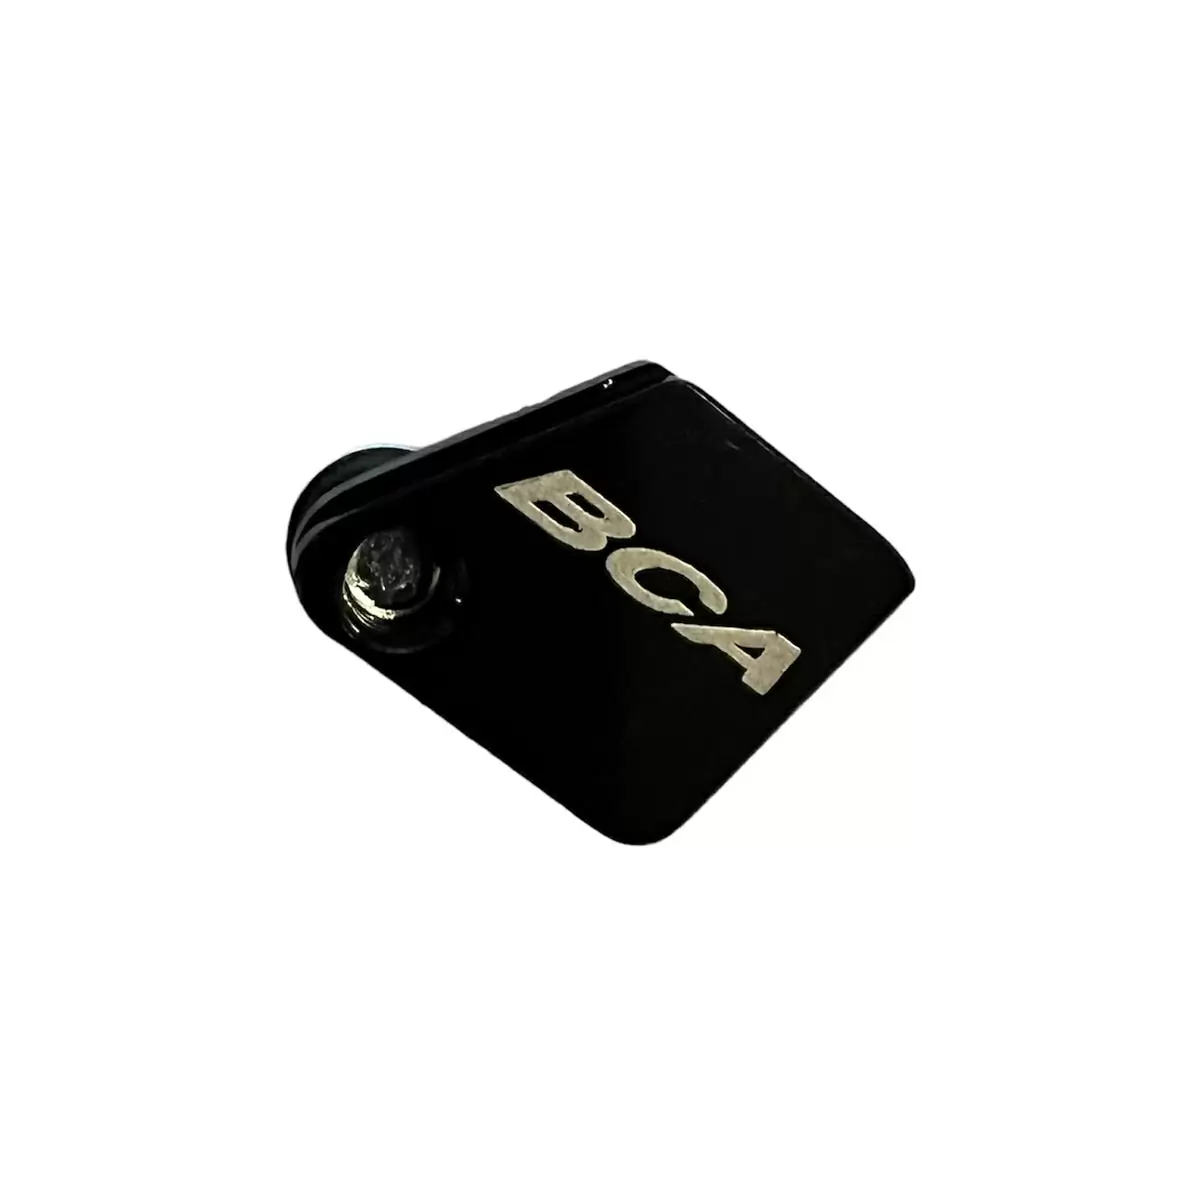 Magnete Sensore Velocità E-bike Disco Posteriore Centerlock 203mm - image